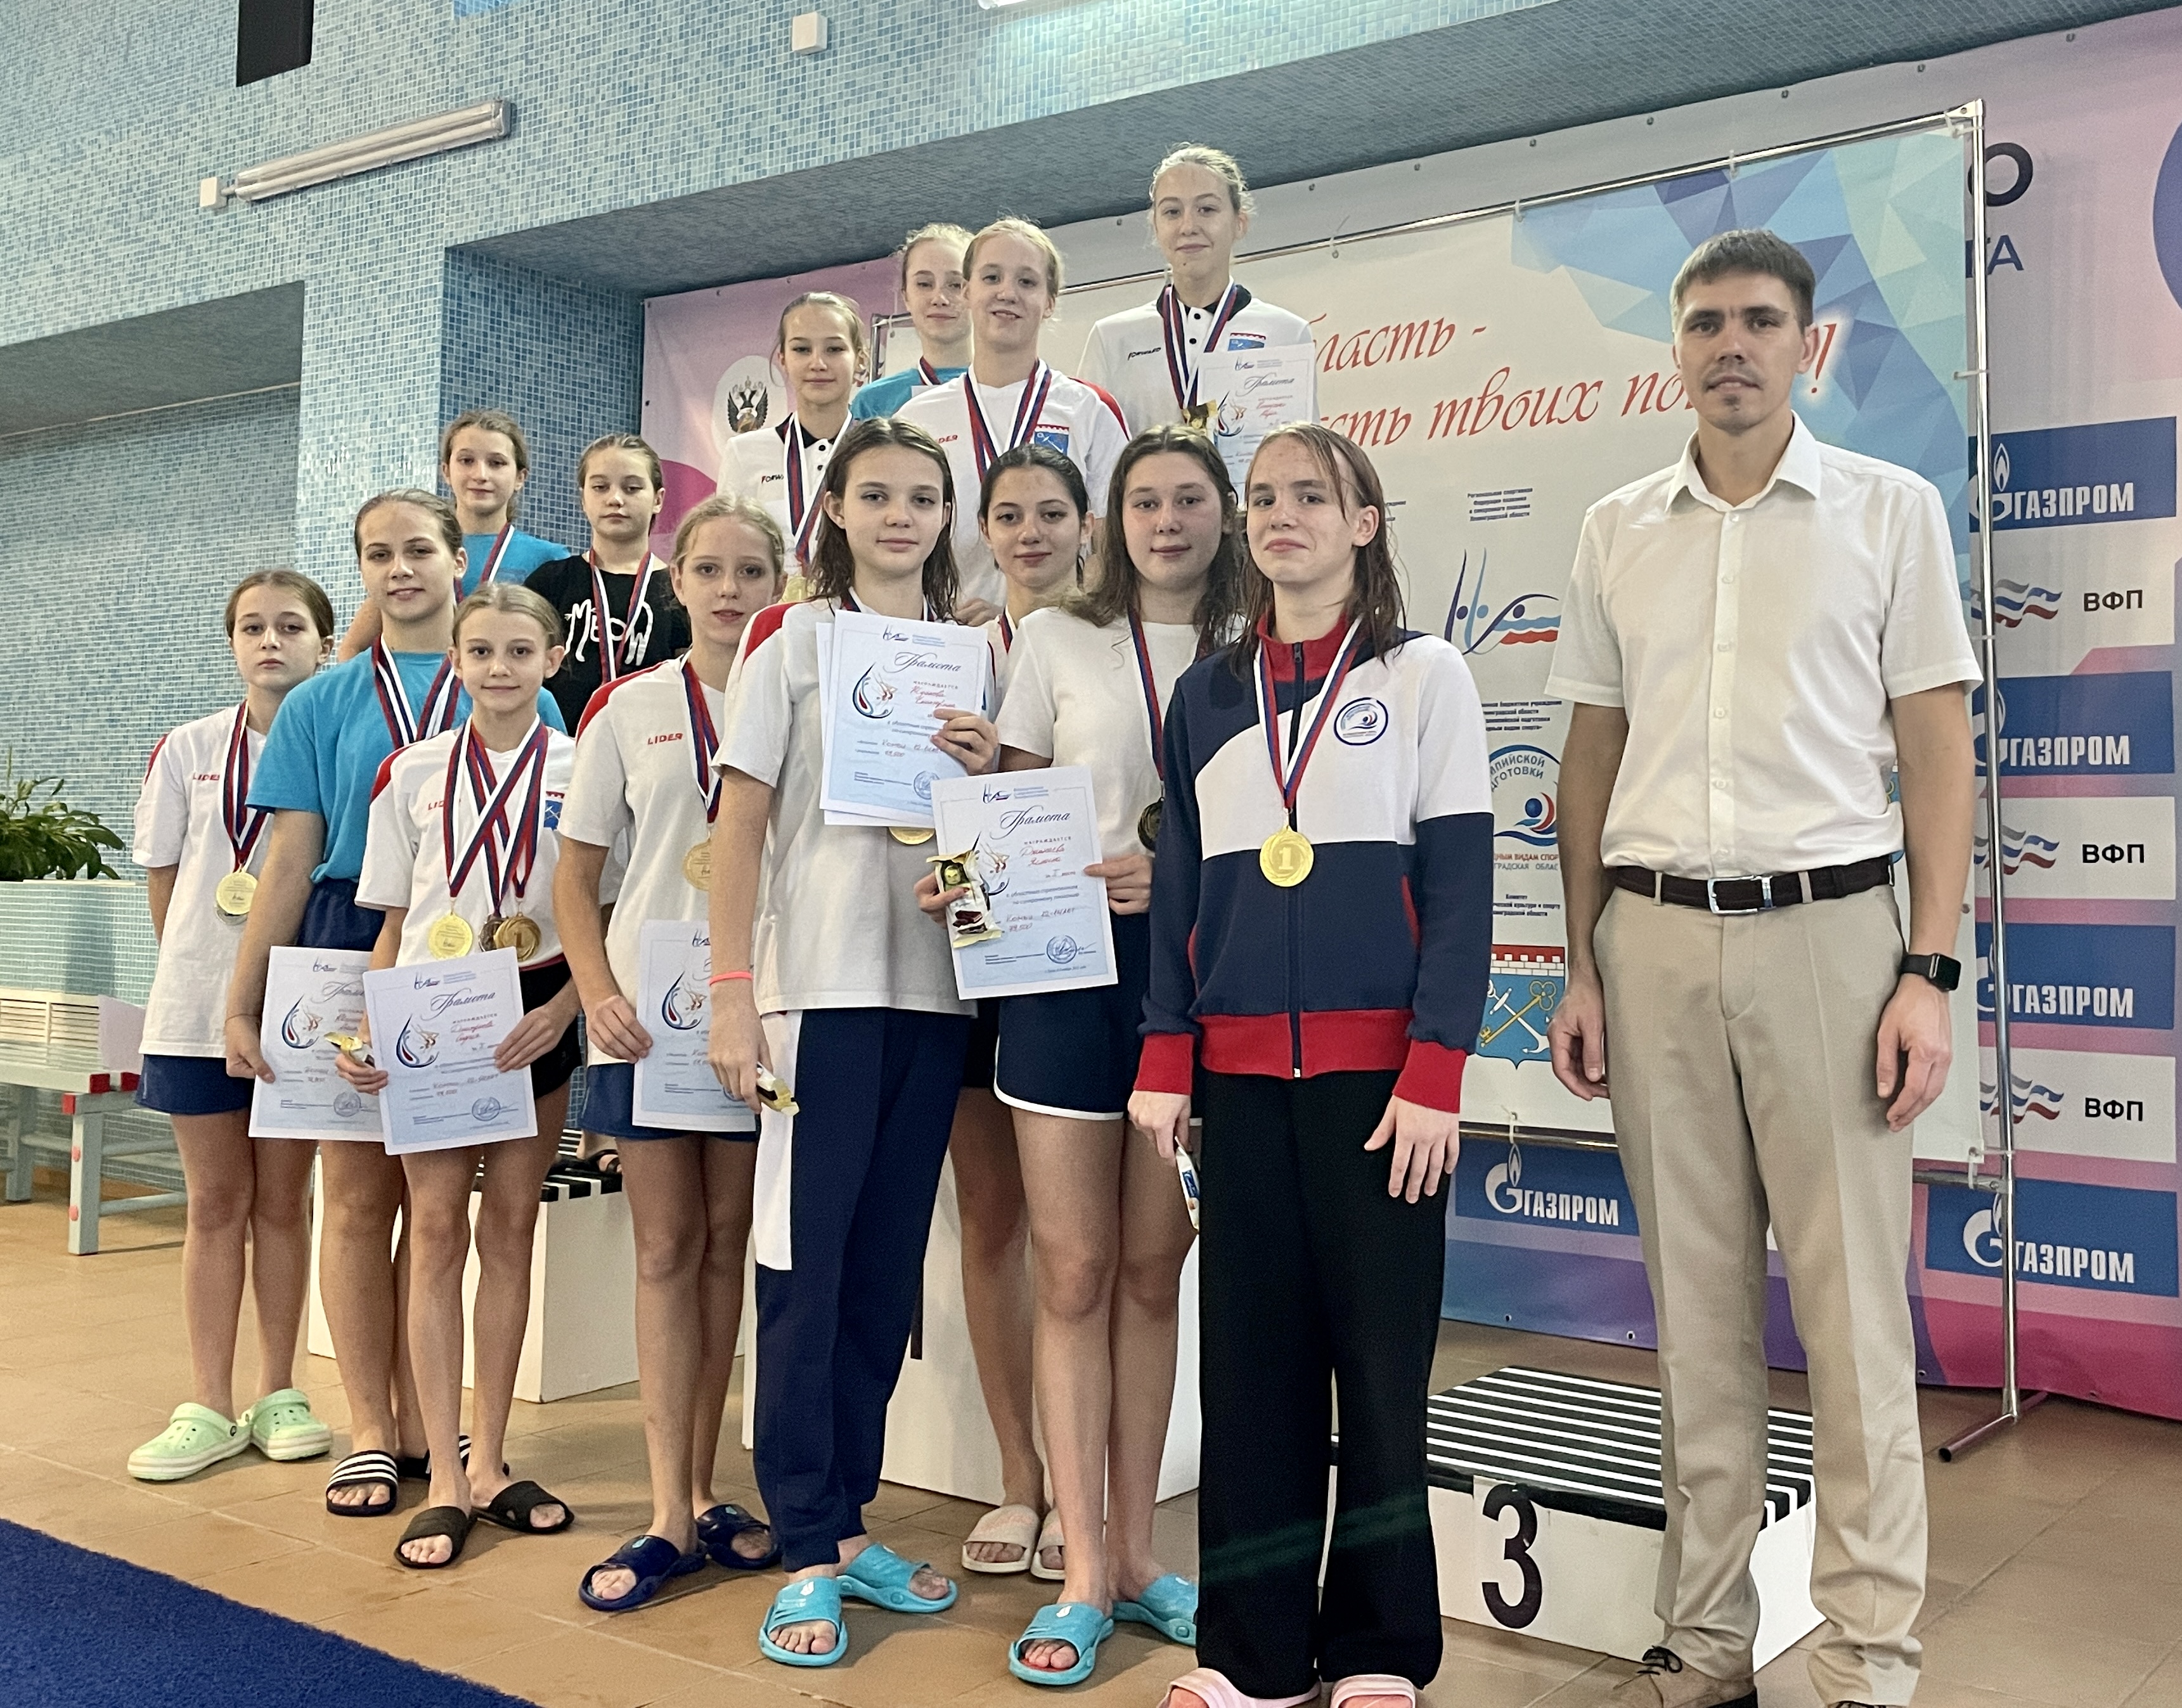 В Тосно дан старт чемпионату, первенству и областным соревнованиям Ленинградской области по синхронному плаванию